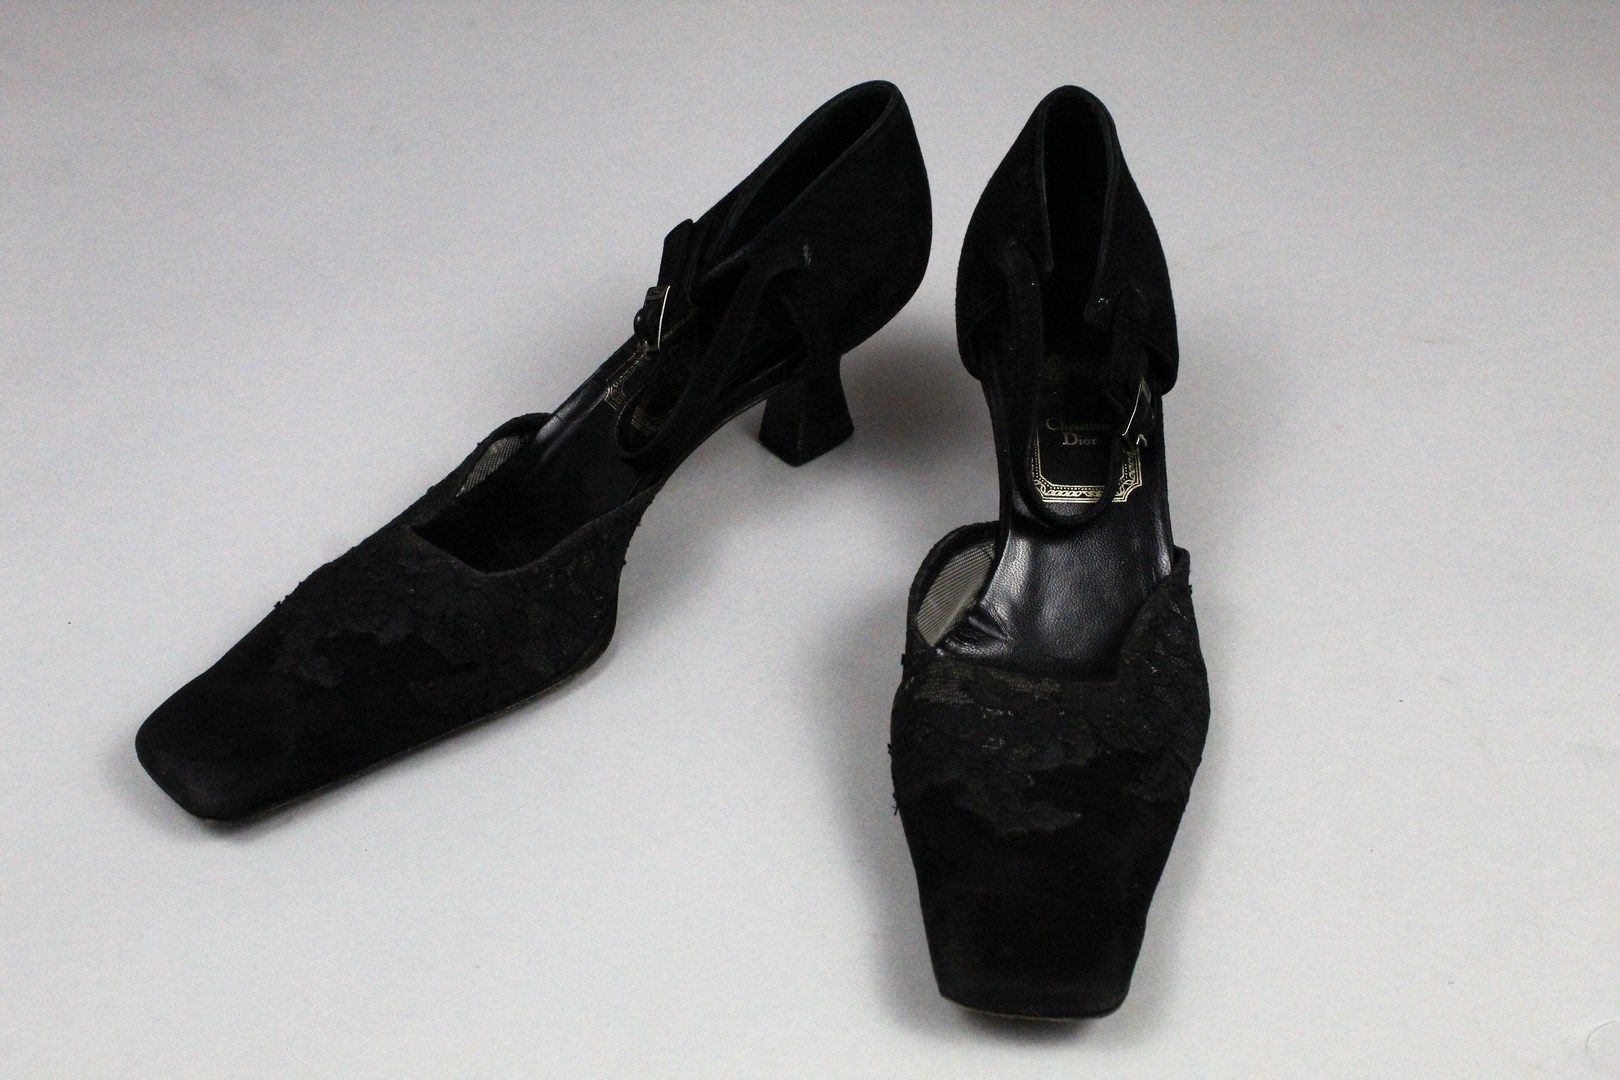 Null 克里斯蒂安-迪奥 (作者：约翰-加利亚诺)



一对双料高跟鞋，黑色麂皮和黑色花边装饰。小沙漏式的鞋跟。



尺寸：38.5

鞋跟高度：5厘米
&hellip;